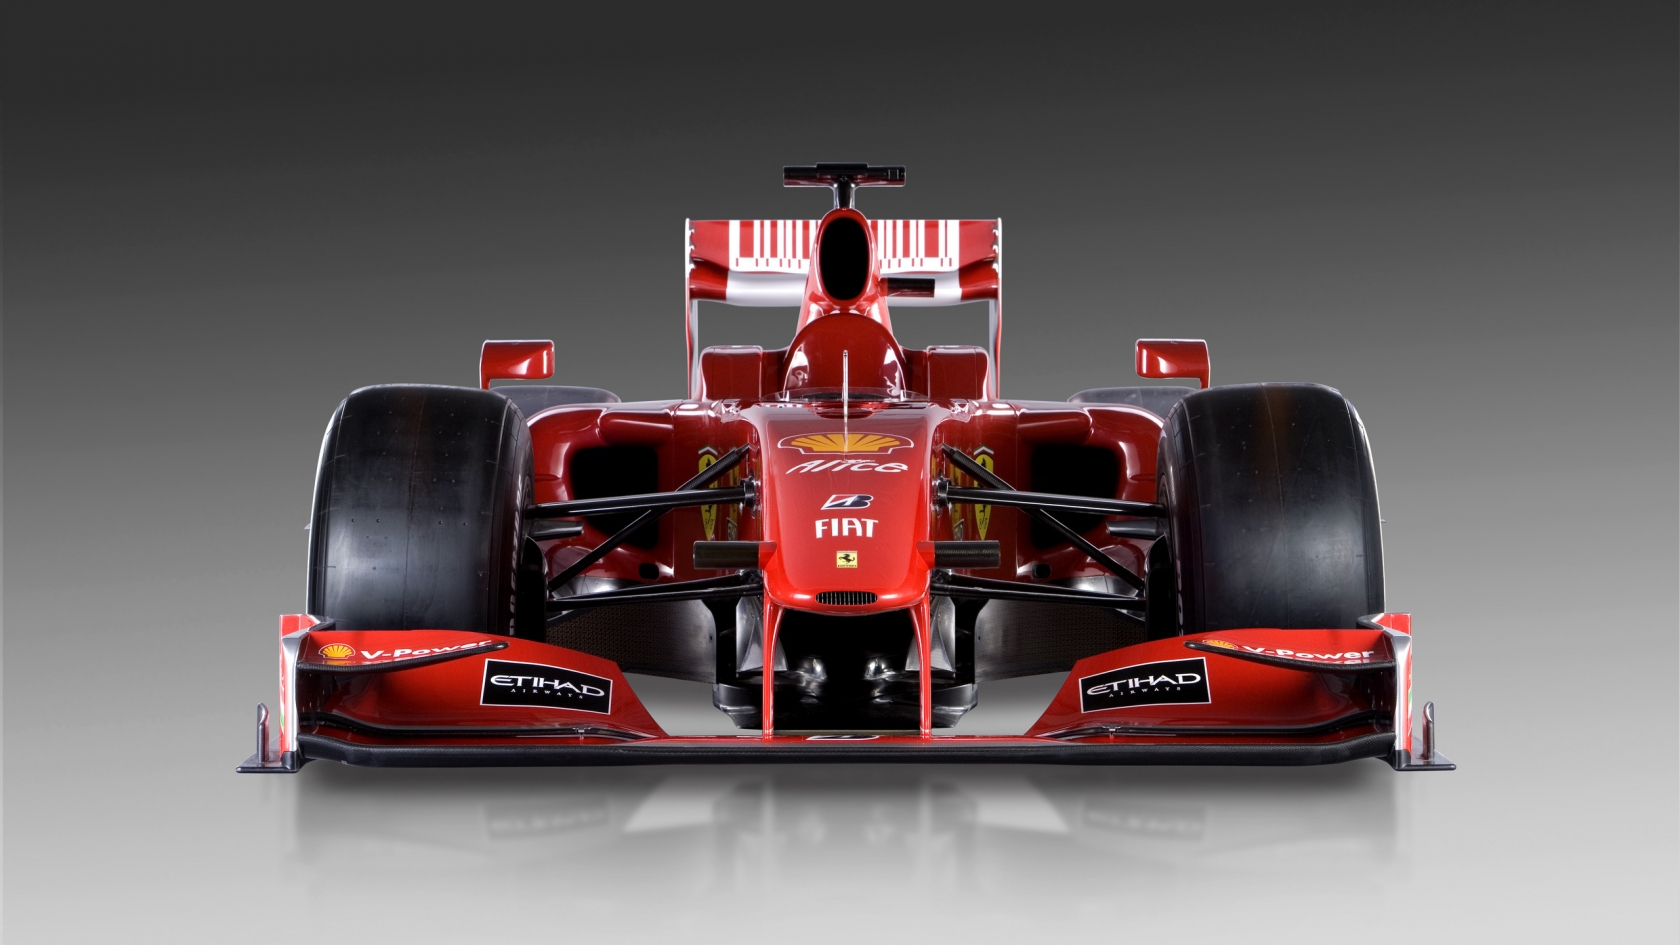 Ferrari Formula 1 for 1680 x 945 HDTV resolution